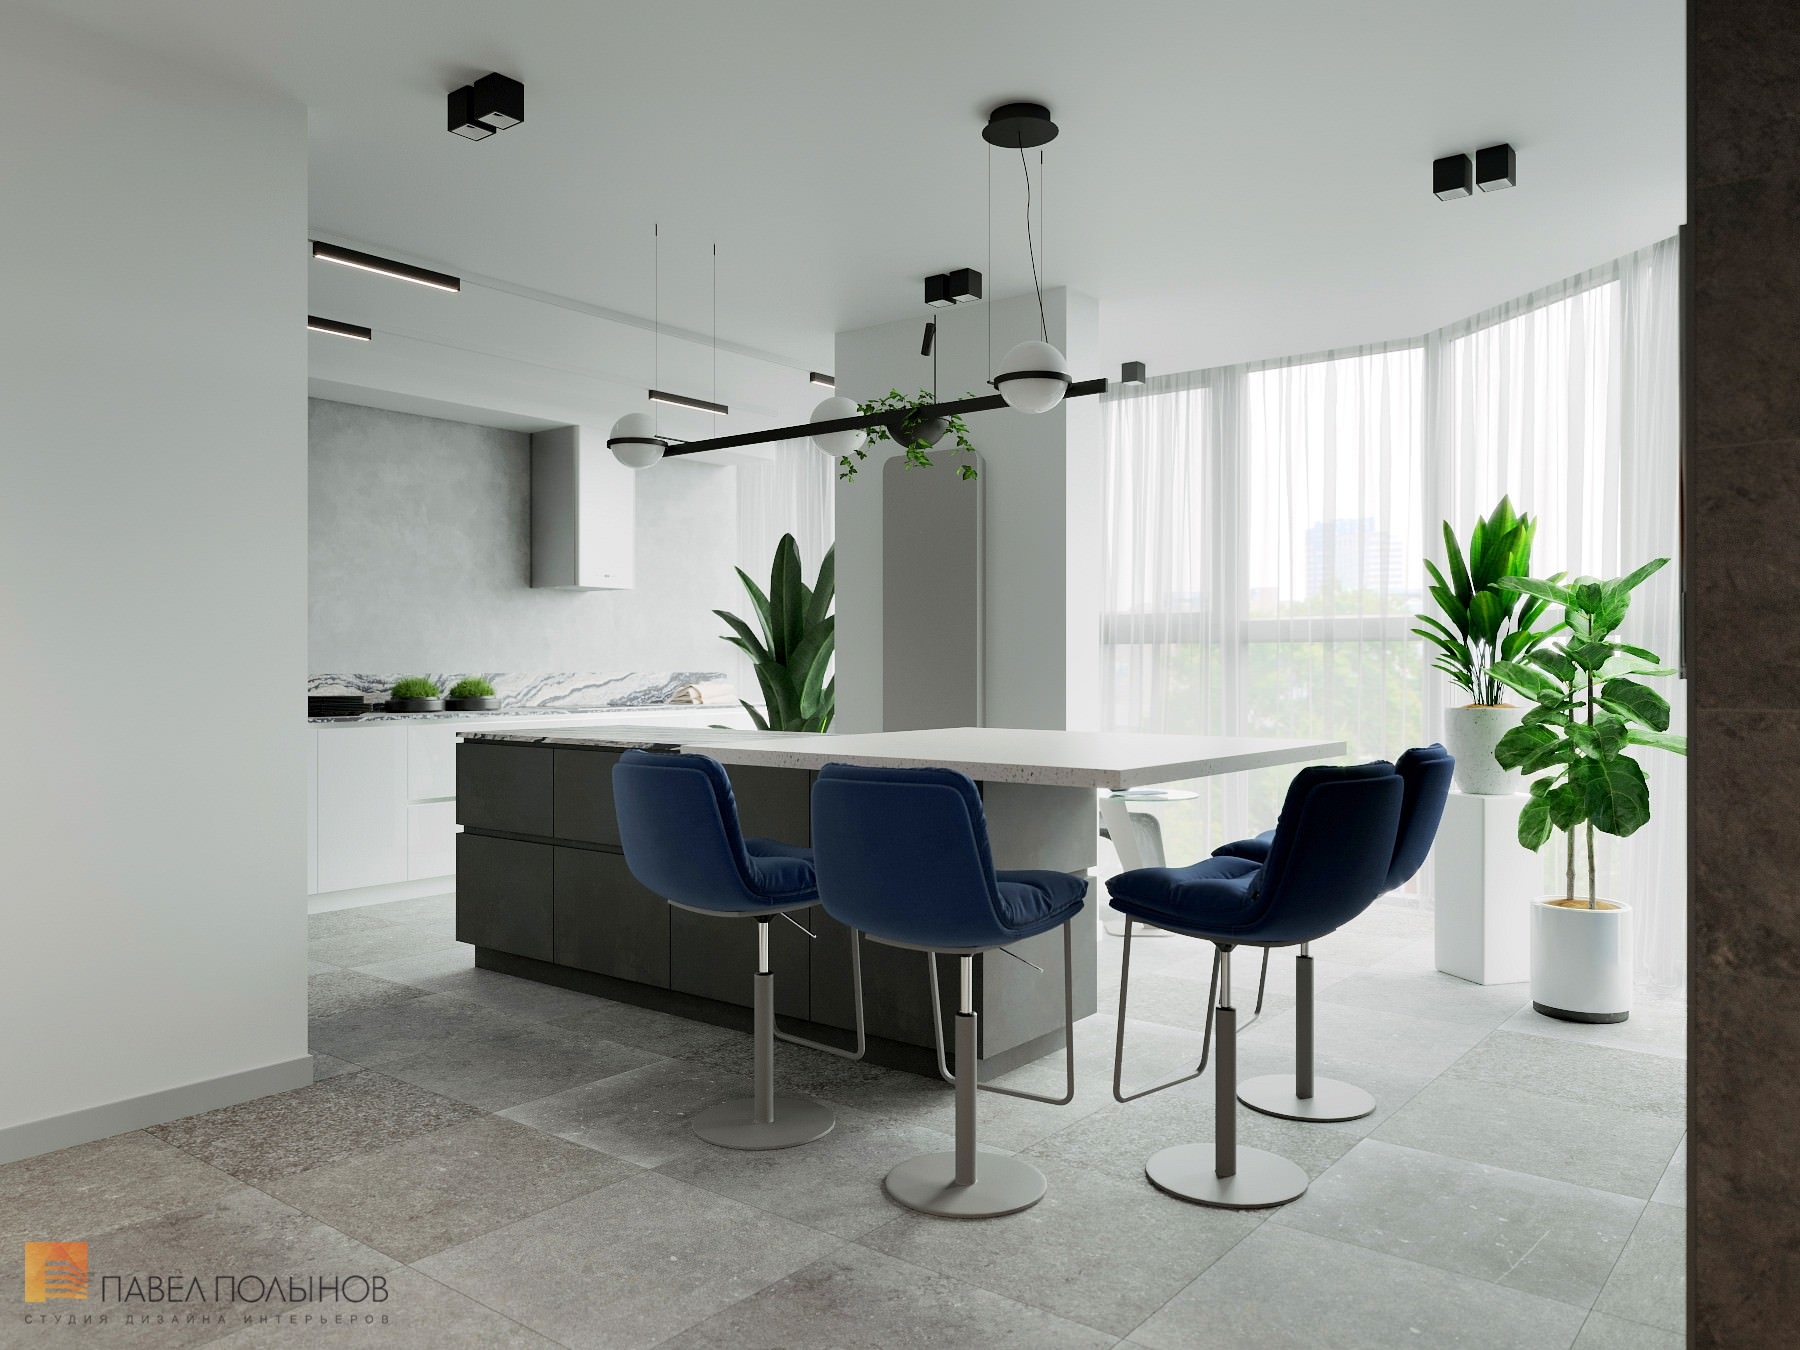 Фото интерьер кухни из проекта «Дизайн интерьер квартиры в ЖК «Кремлевские звезды», современный стиль, 133 кв.м.»